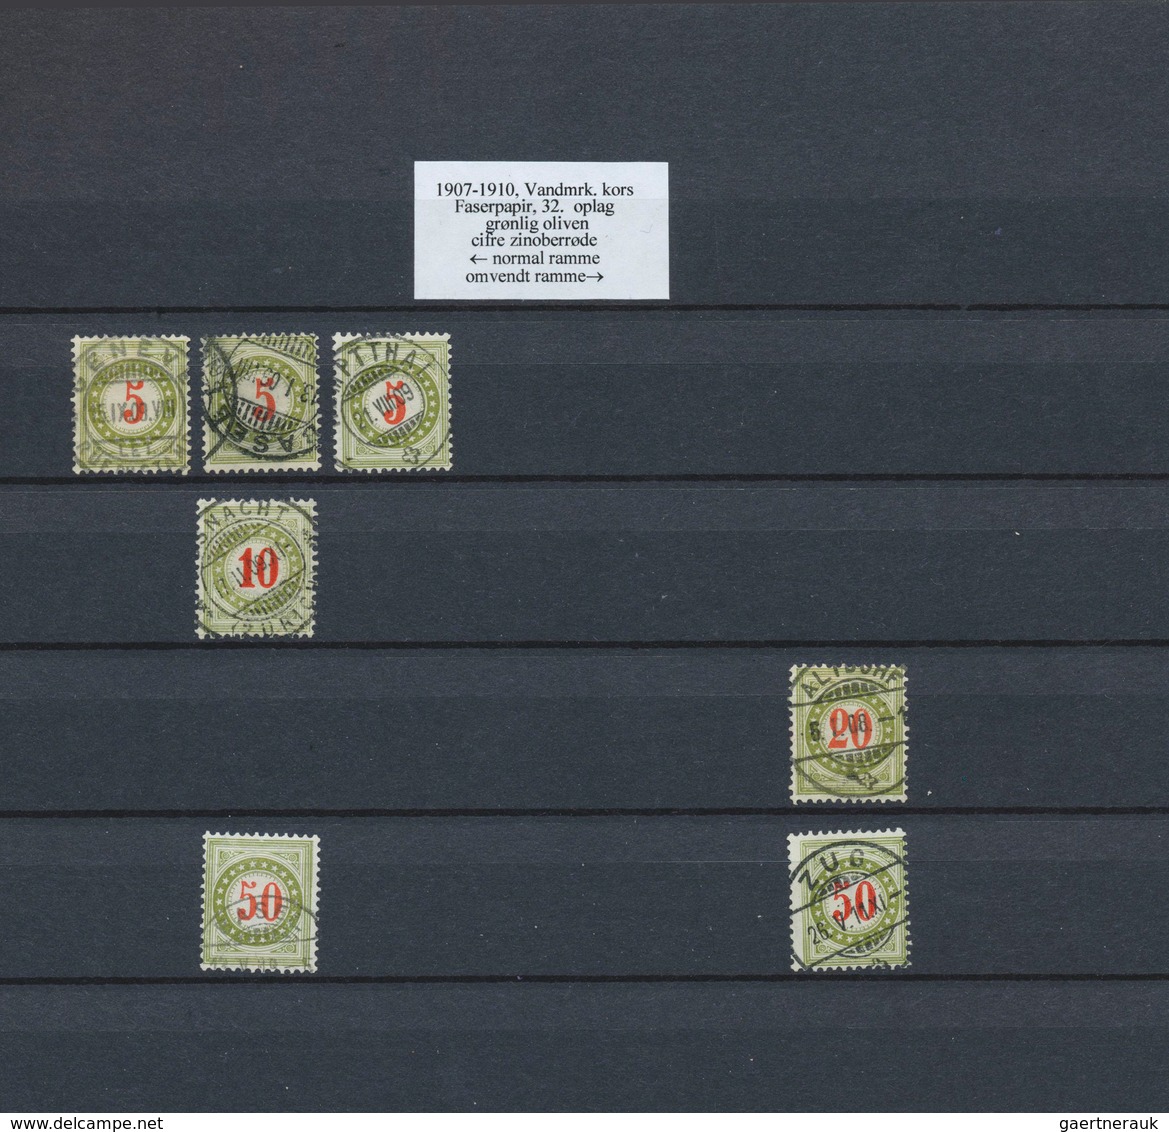 Schweiz - Portomarken: 1878-1910: Umfangreiche Sammlung gestempelter Marken der verschiedenen Ausgab